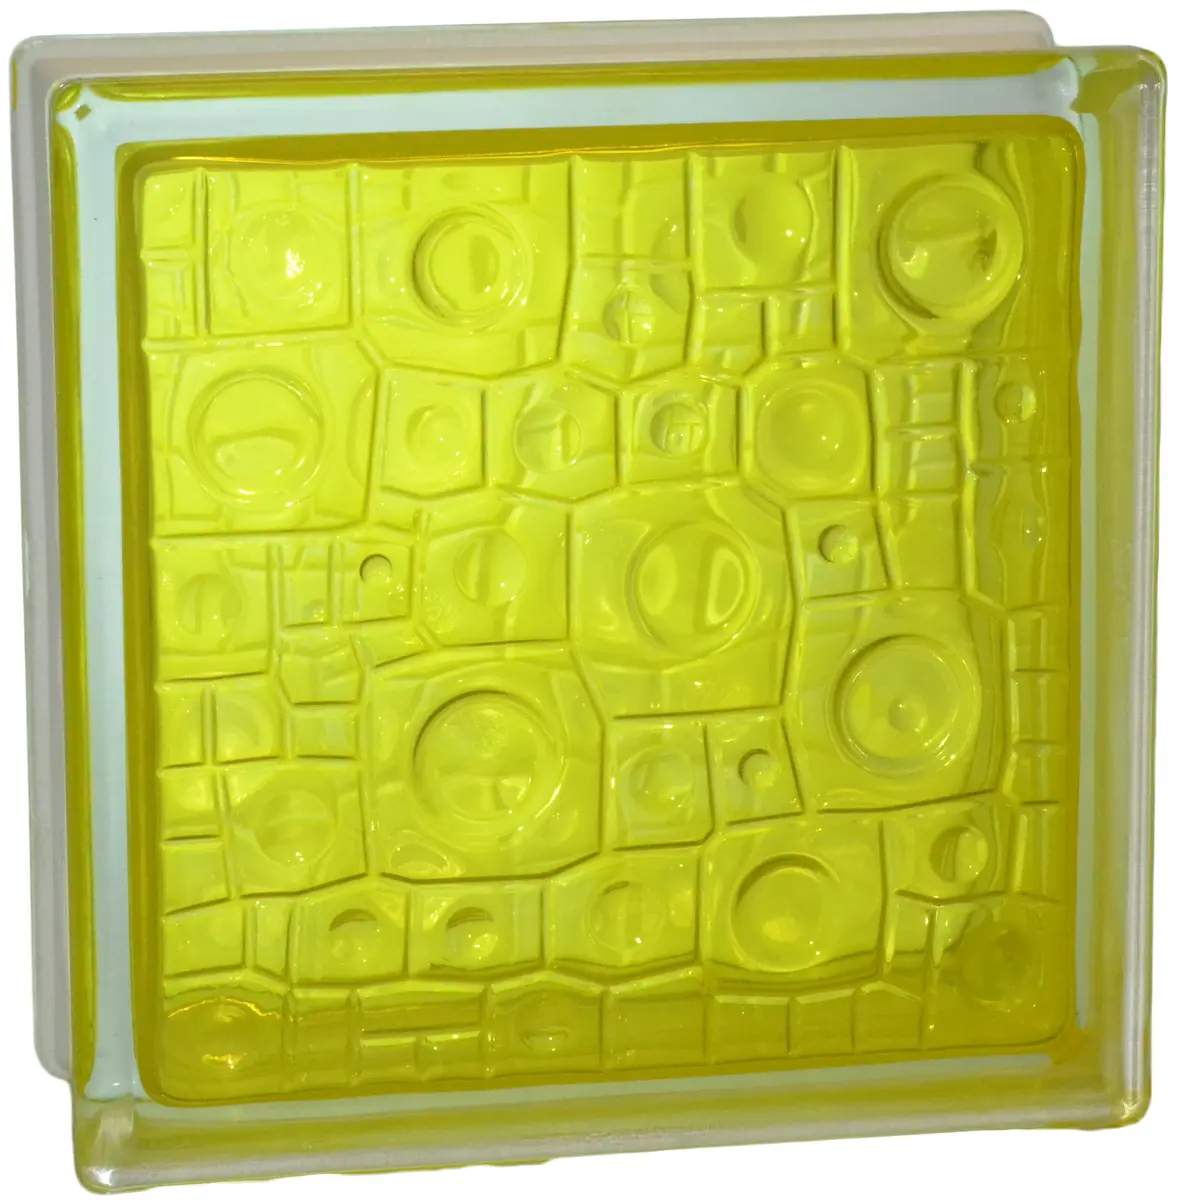 Стеклоблок Губка желтый 190*190*80 Glass Block